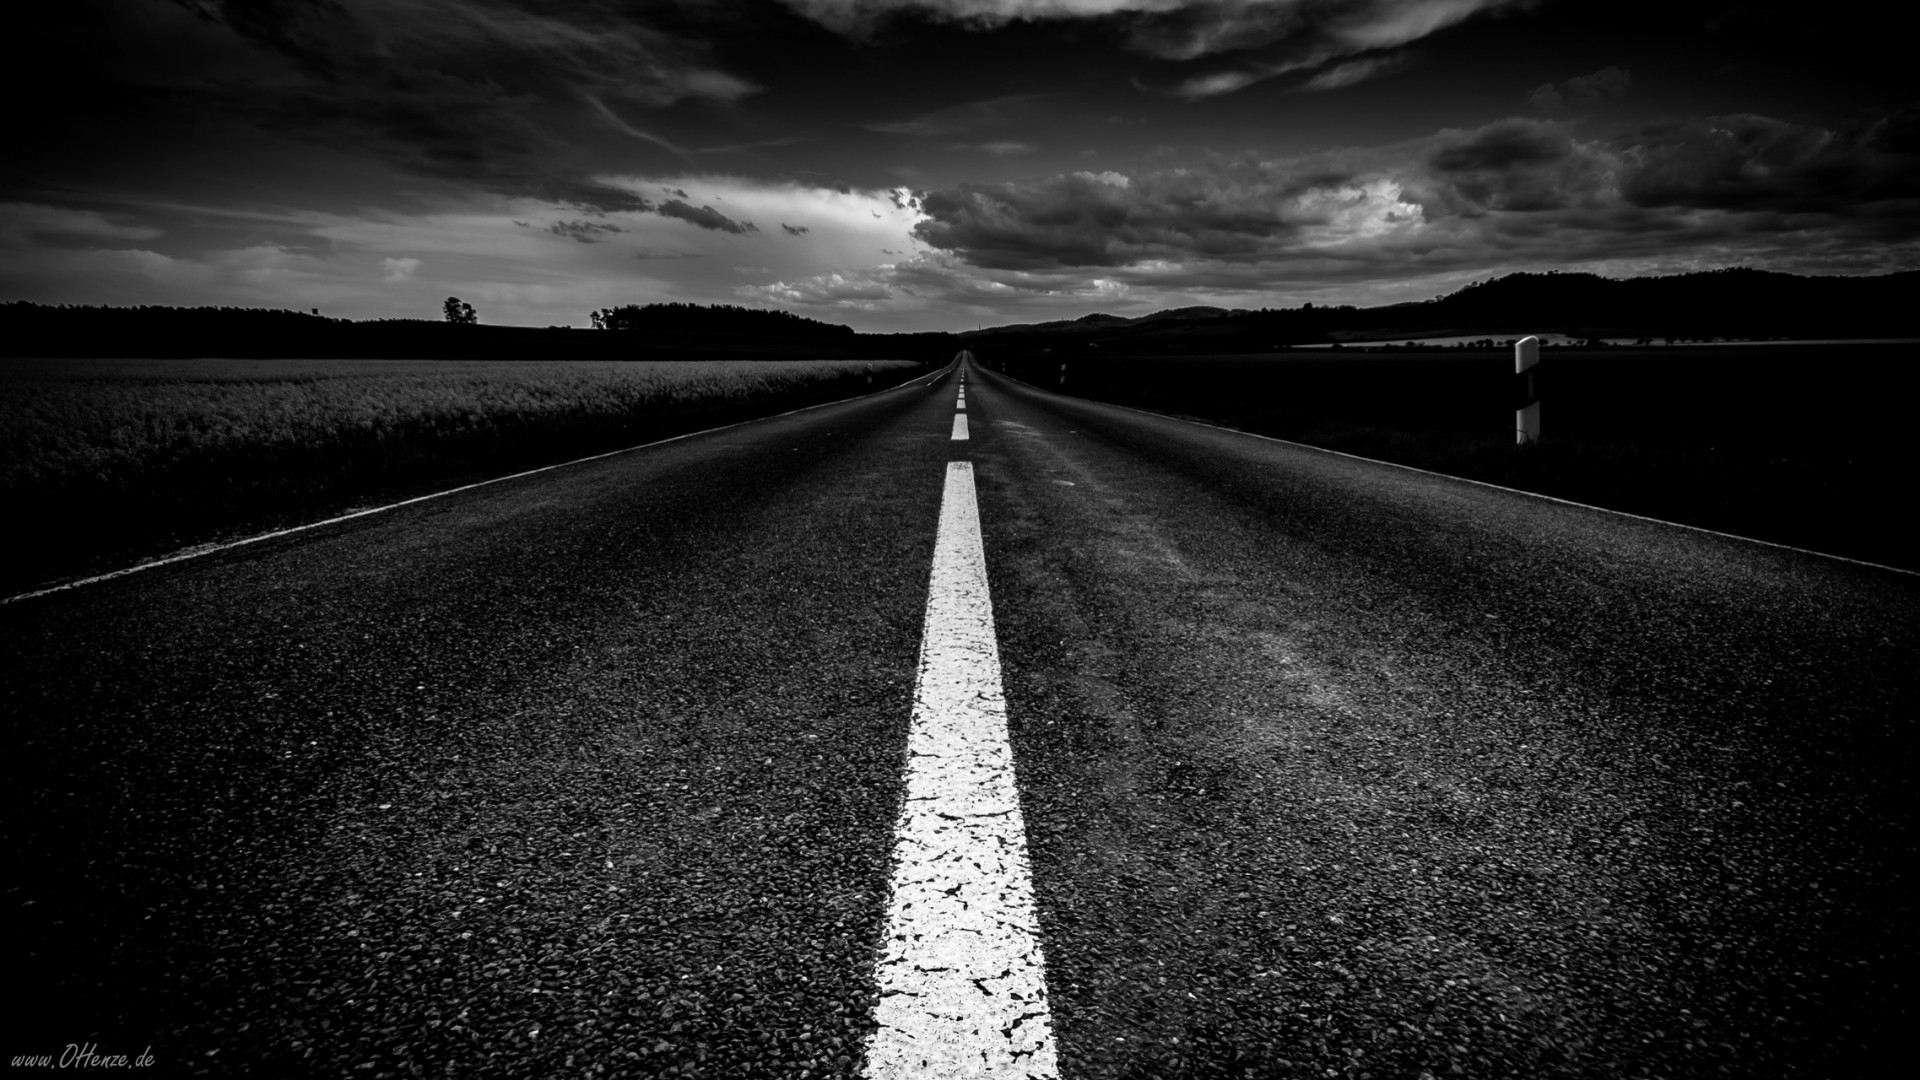 fondos de pantalla hd en blanco y negro,negro,cielo,blanco,en blanco y negro,la carretera